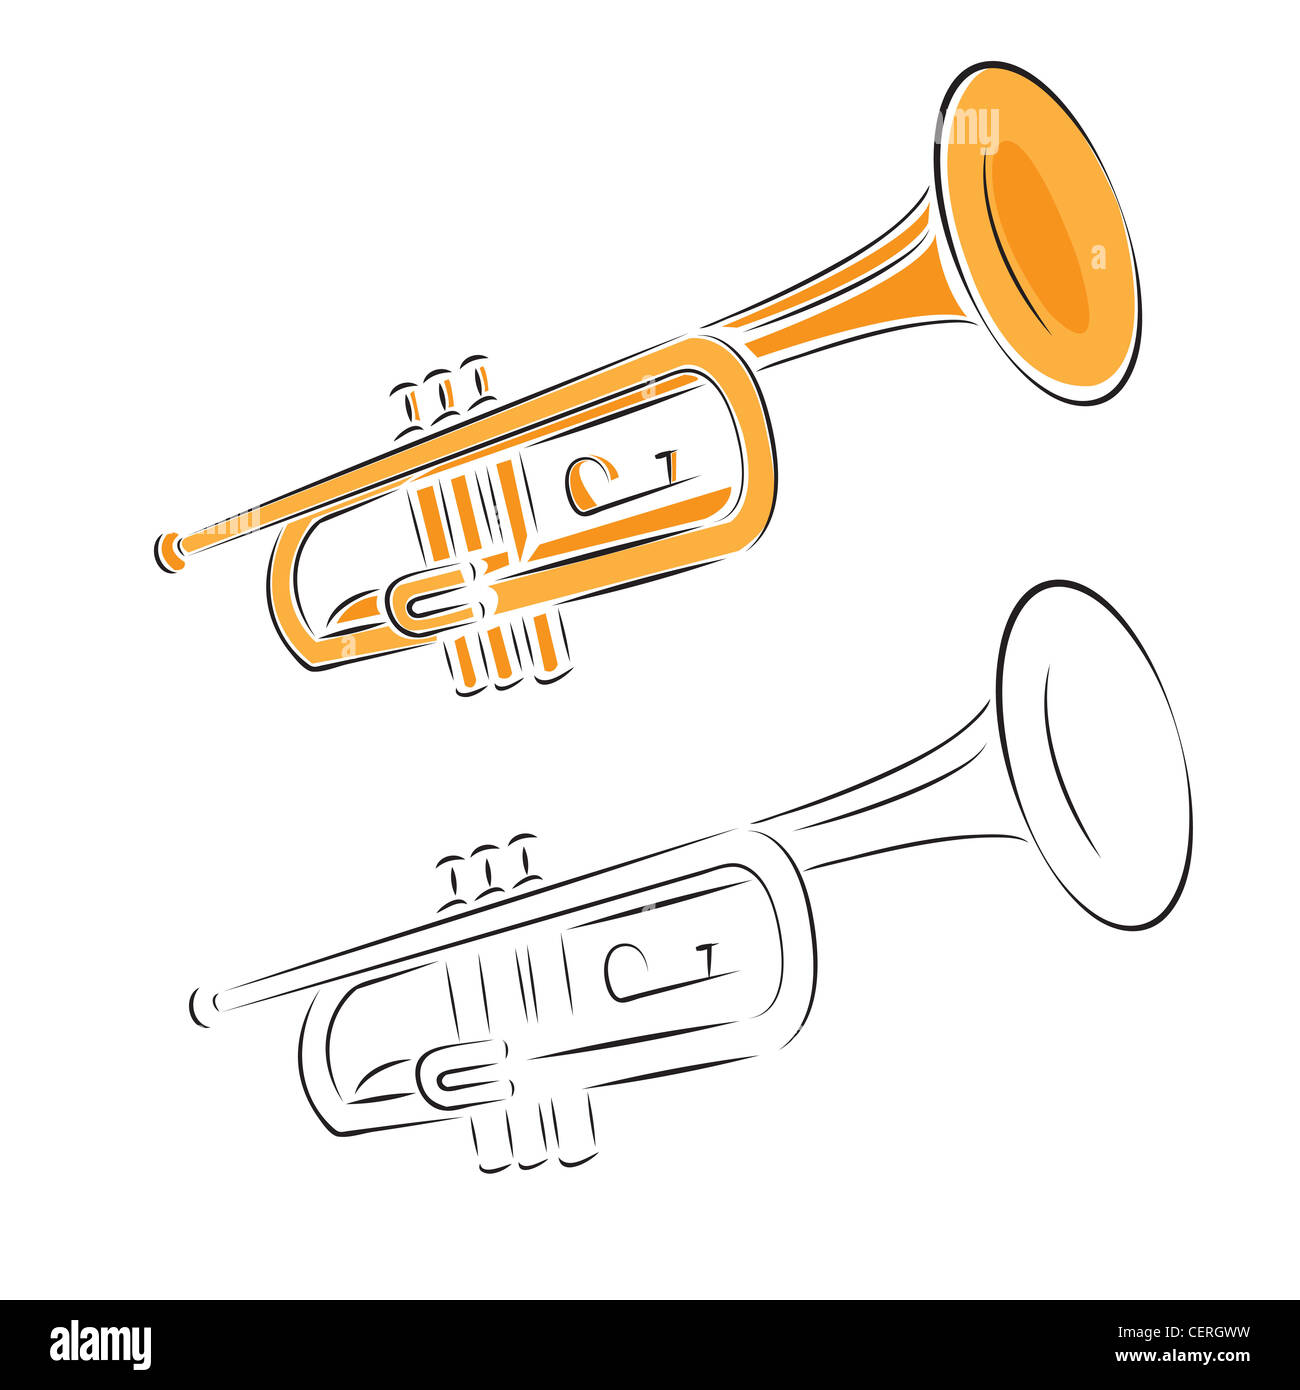 Trumpet set illustration isolated on white. Stock Photo